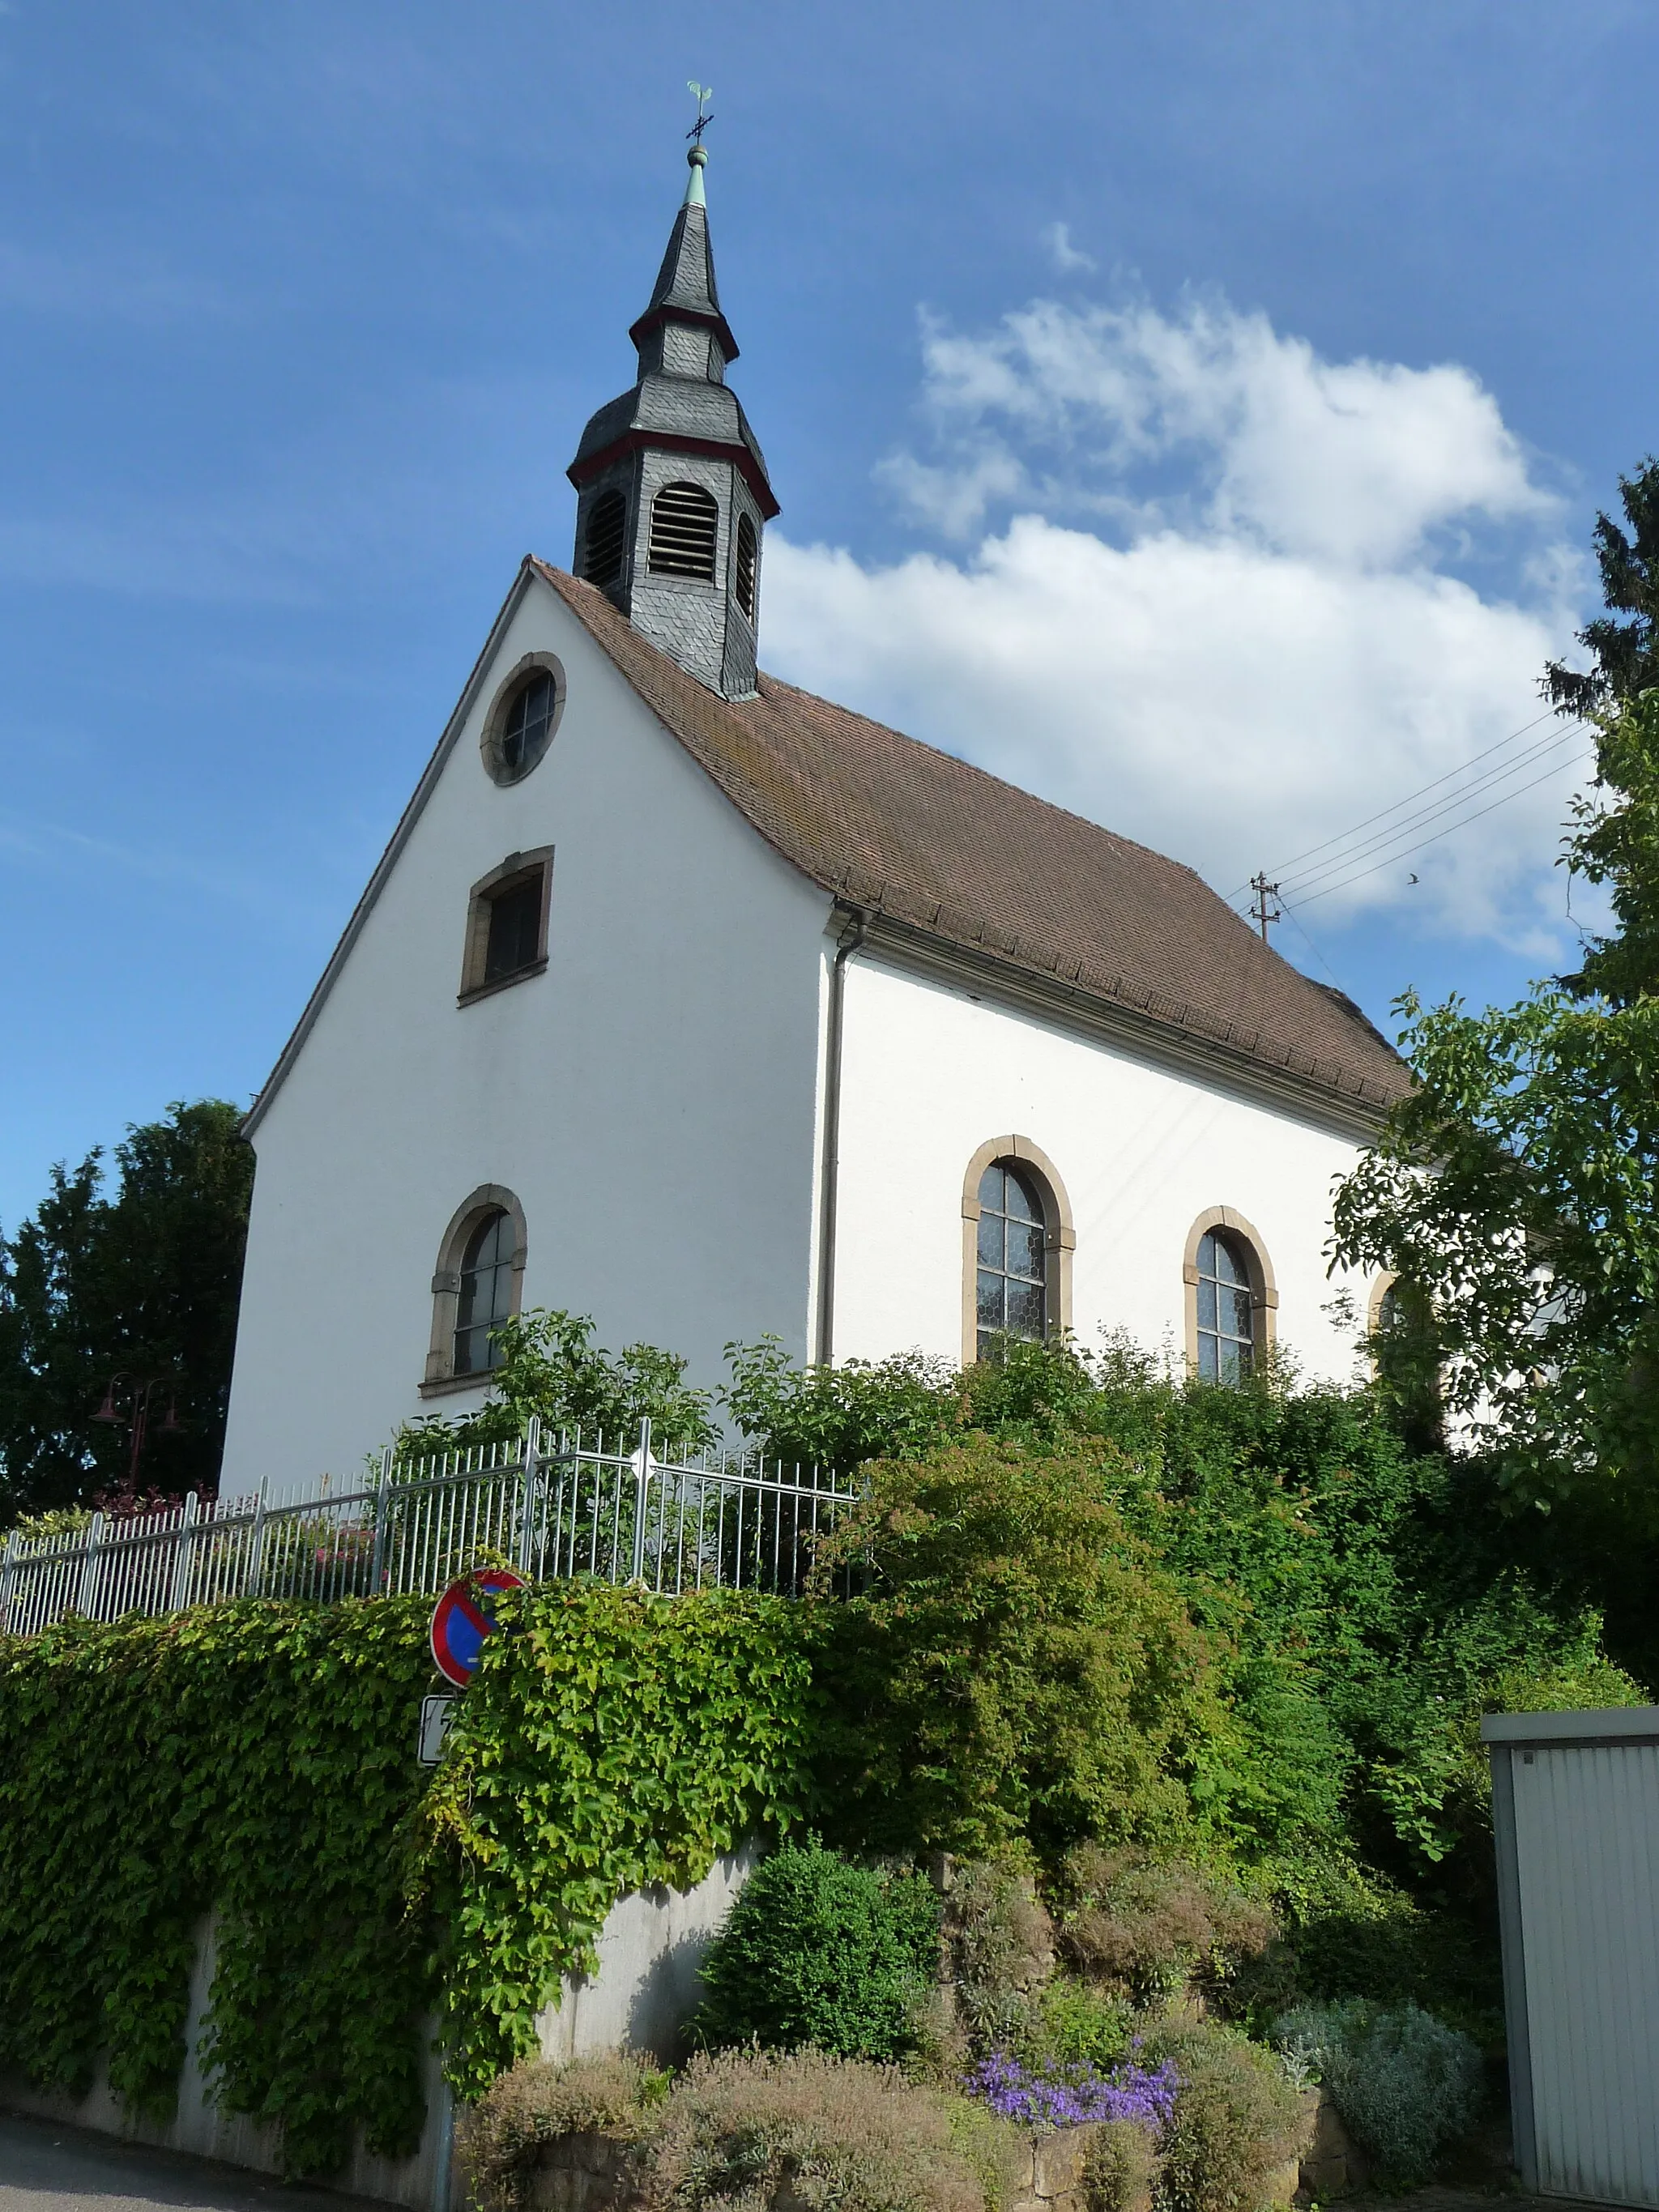 Photo showing: Katholische Kirche St. Philipp und Jakob in Knöringen.
Knöringen ist eine Ortsgemeinde im Landkreis Südliche Weinstraße in Rheinland-Pfalz.